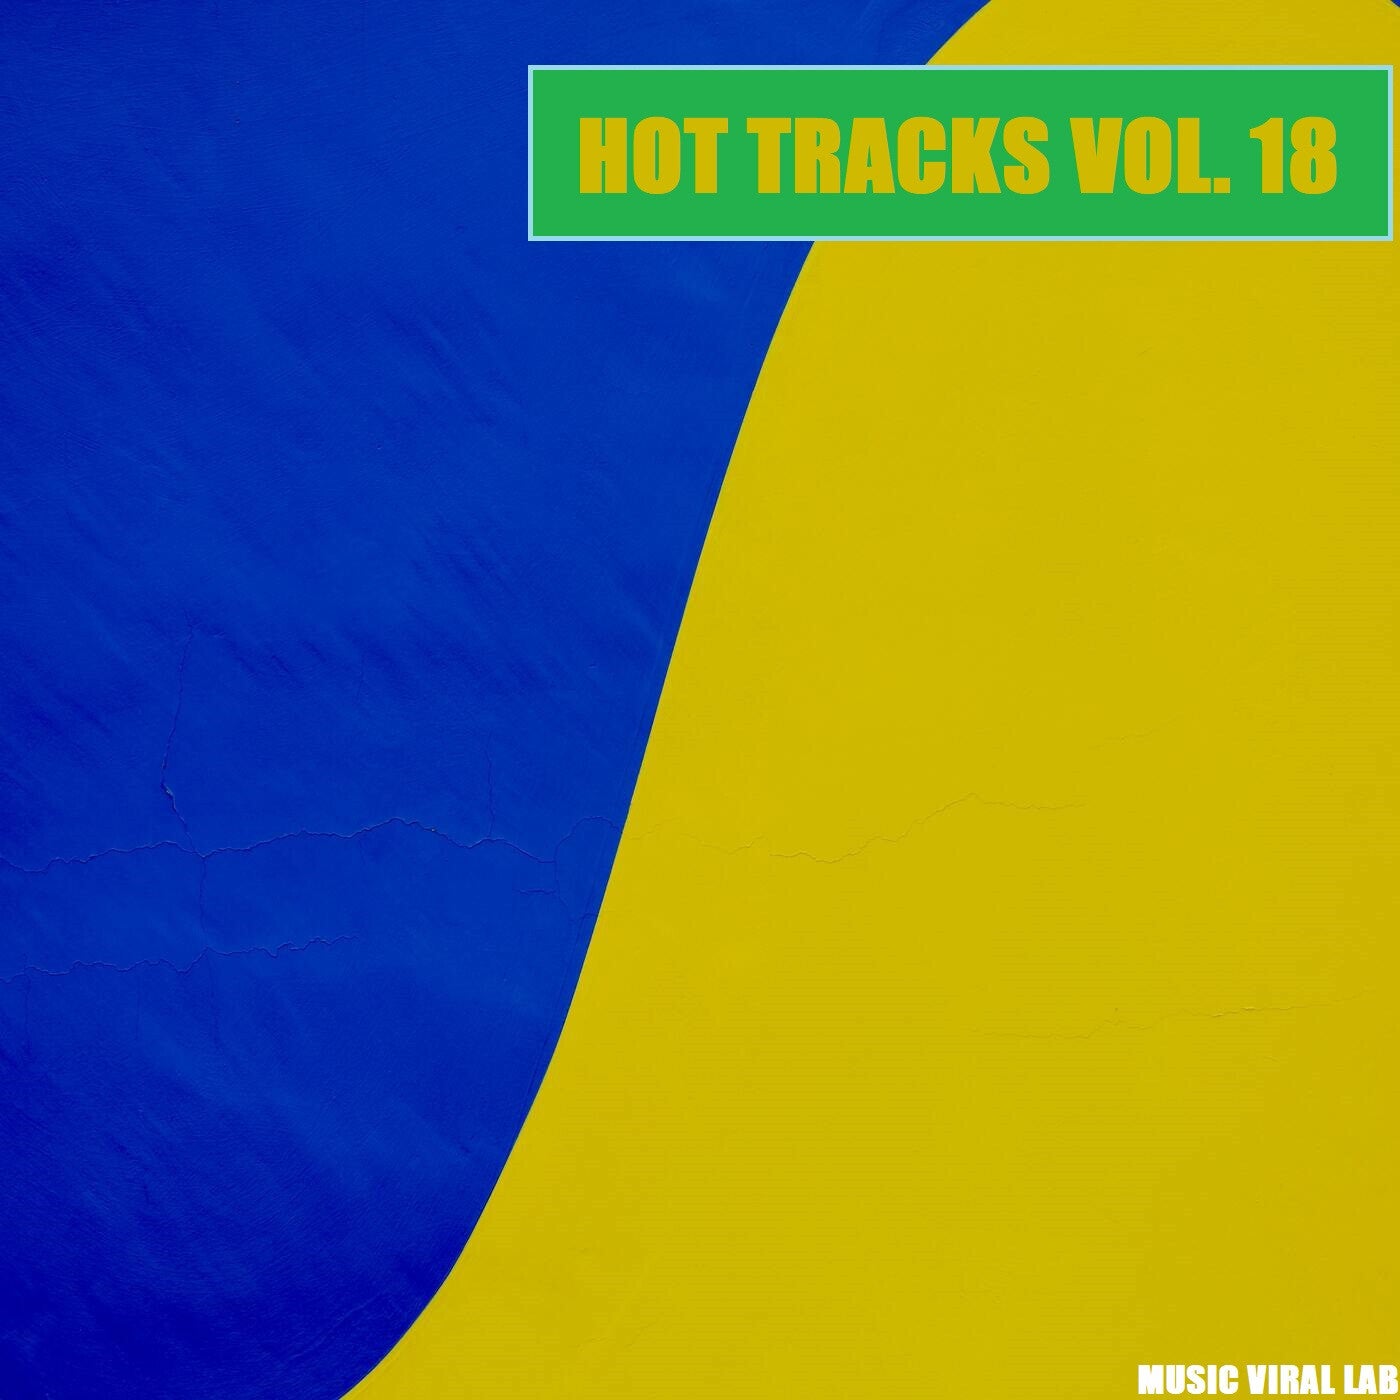 Hot Tracks Vol. 18